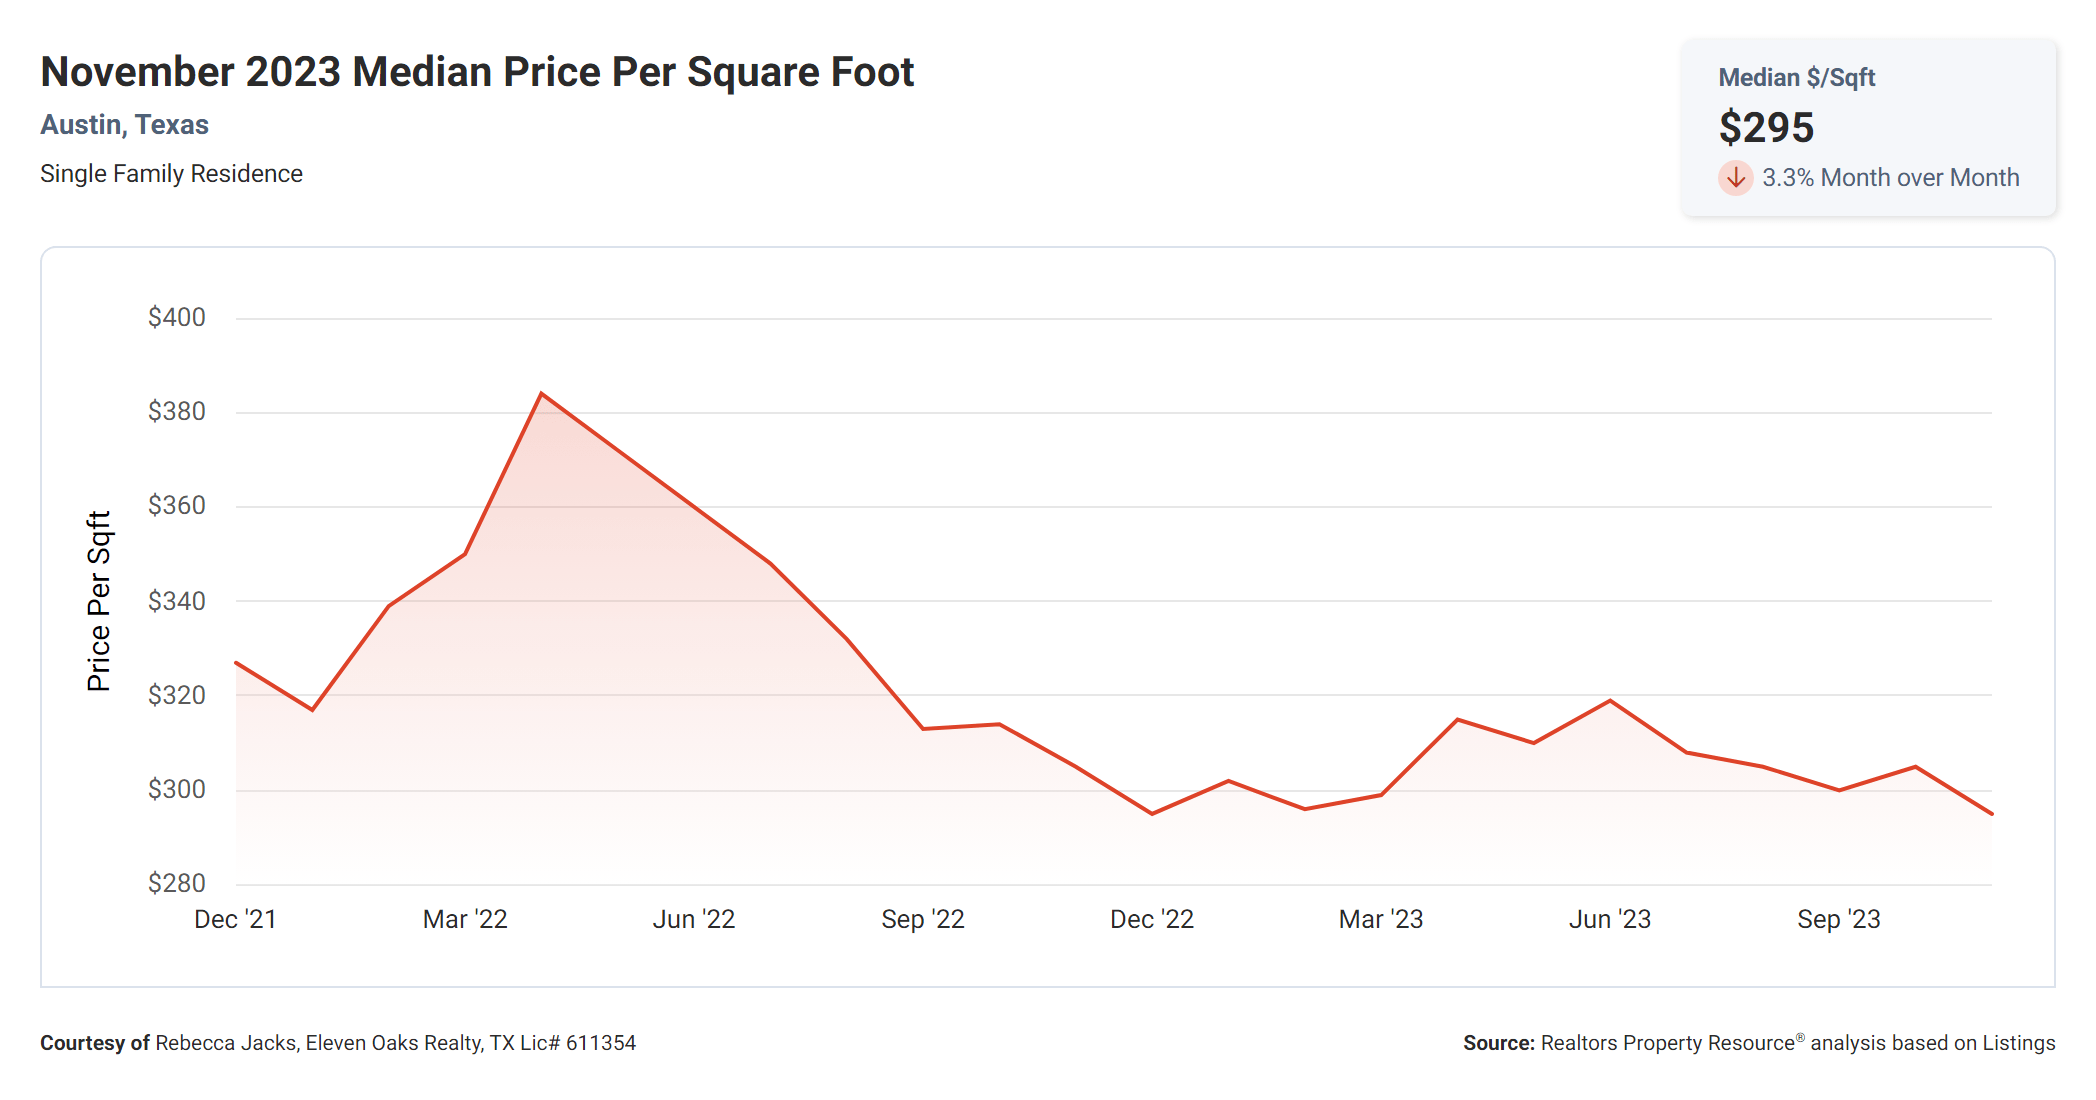 November 2023 Austin median price per square foot